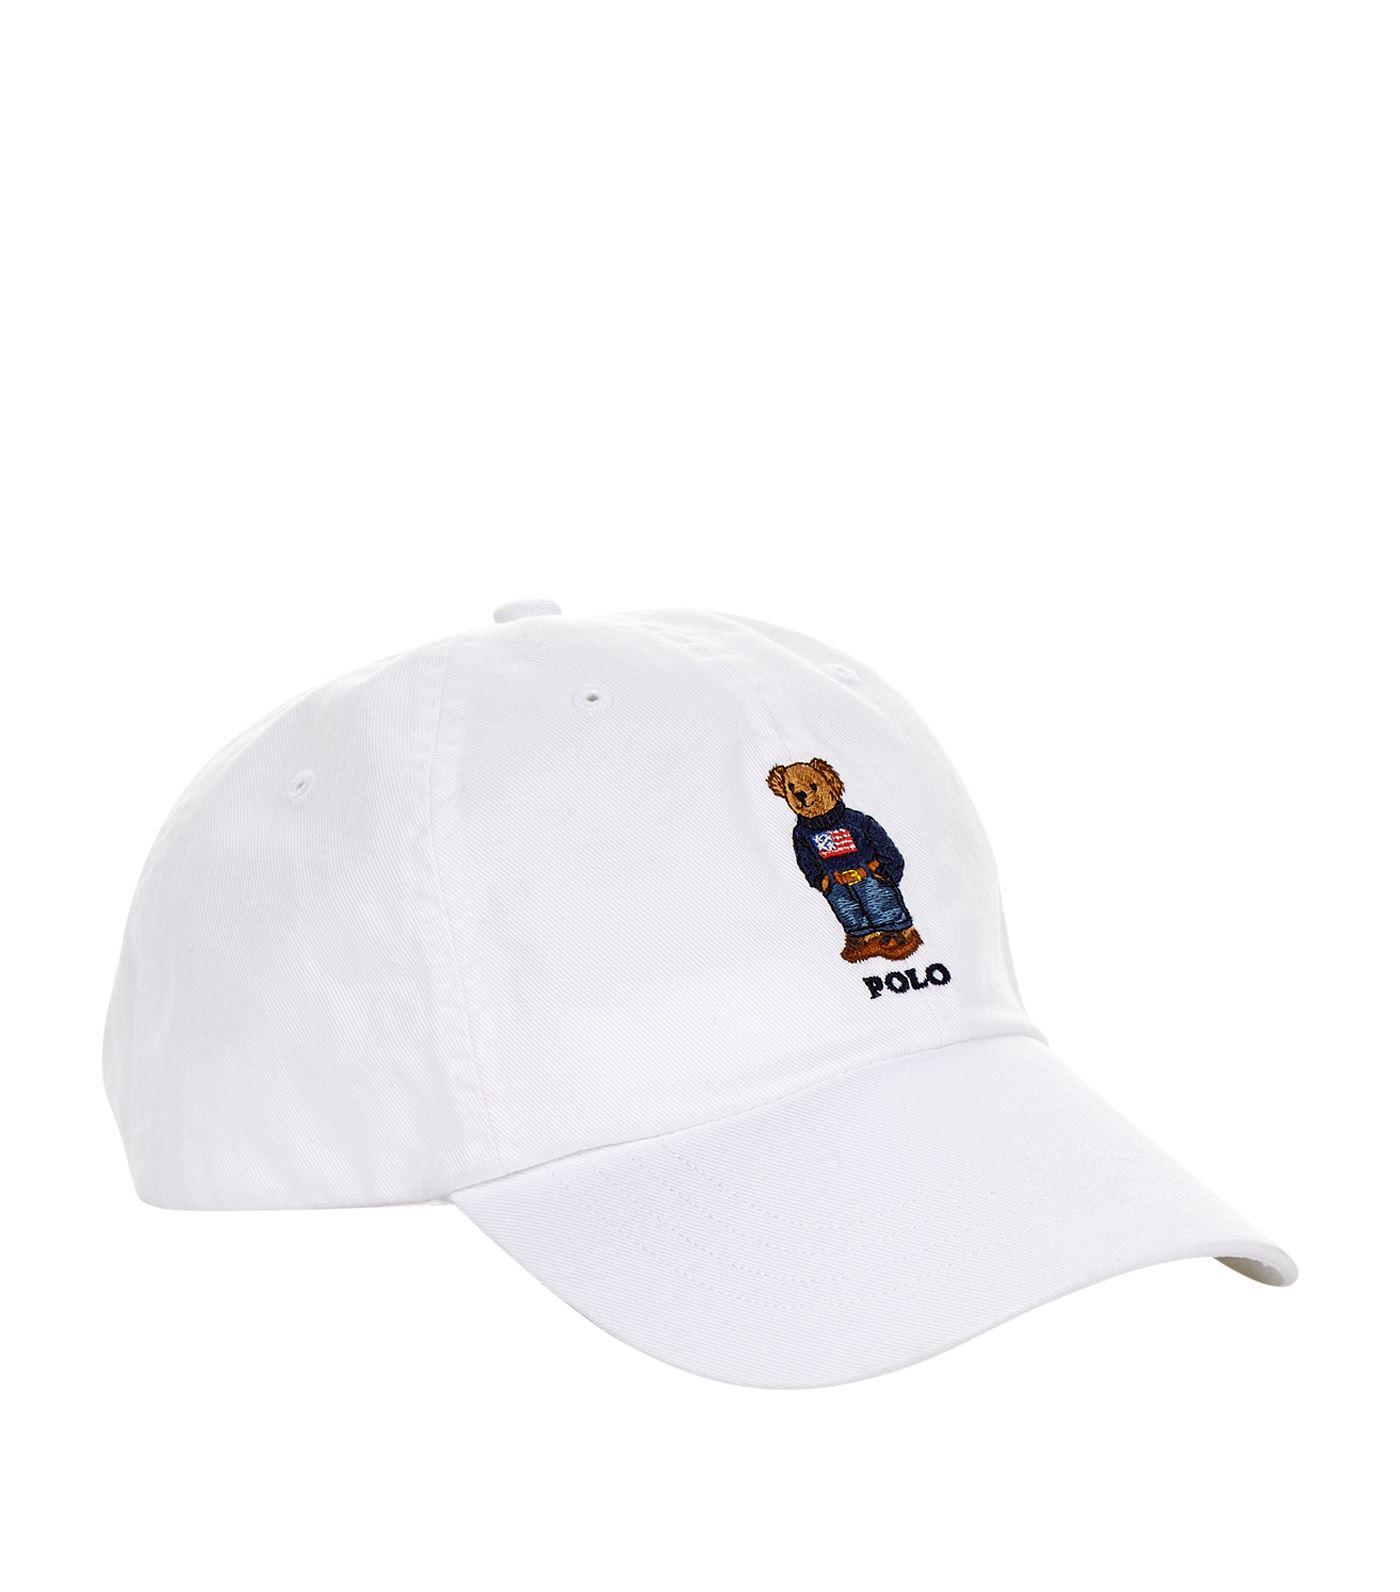 polo bear cap white